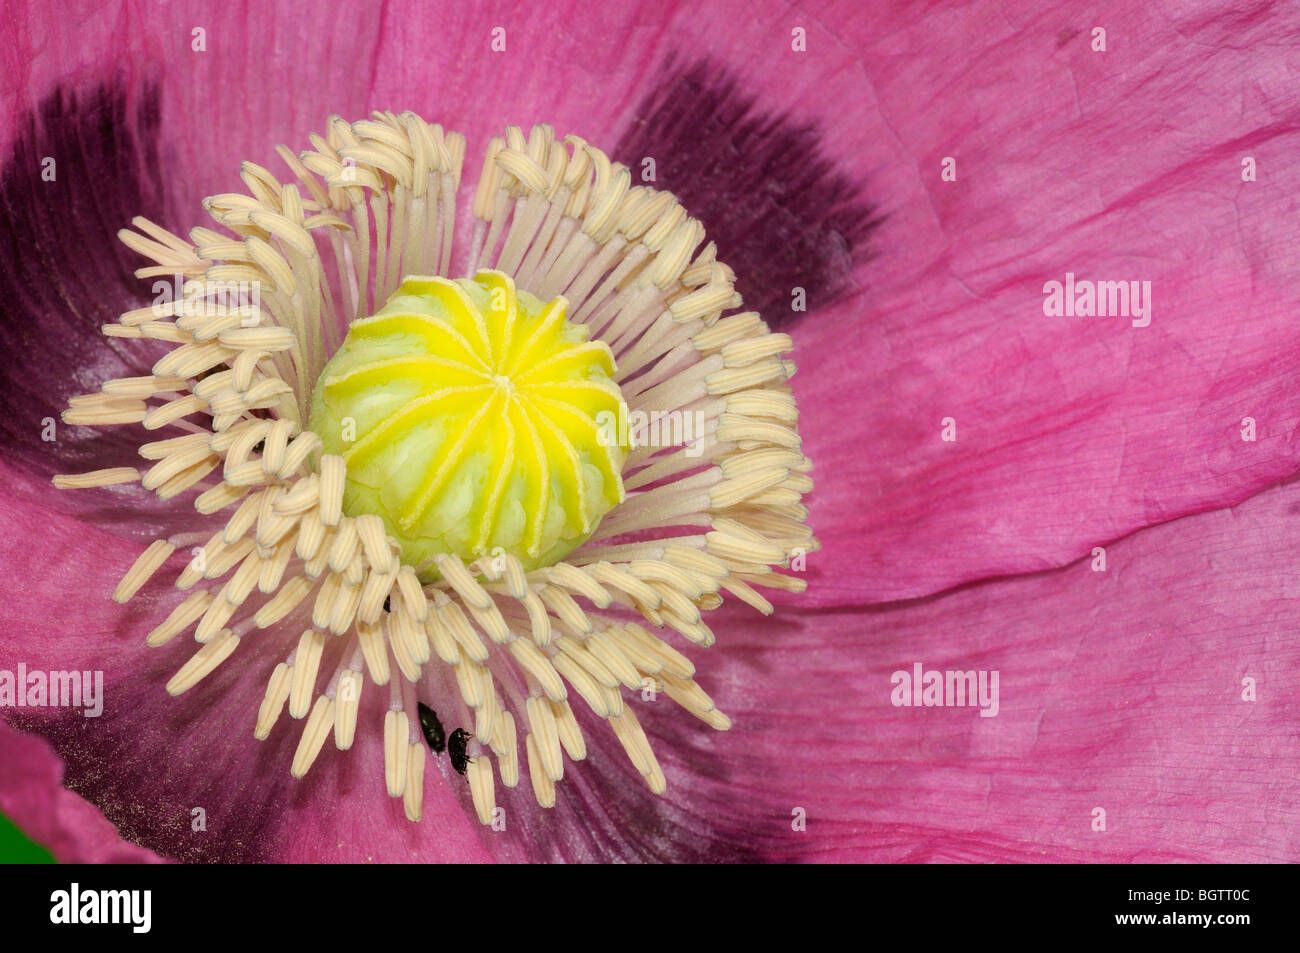 Rosa fiore di papavero (Papaver specie) close-up che mostra il dettaglio di stami e lo stigma, Oxfordshire, Regno Unito. Foto Stock